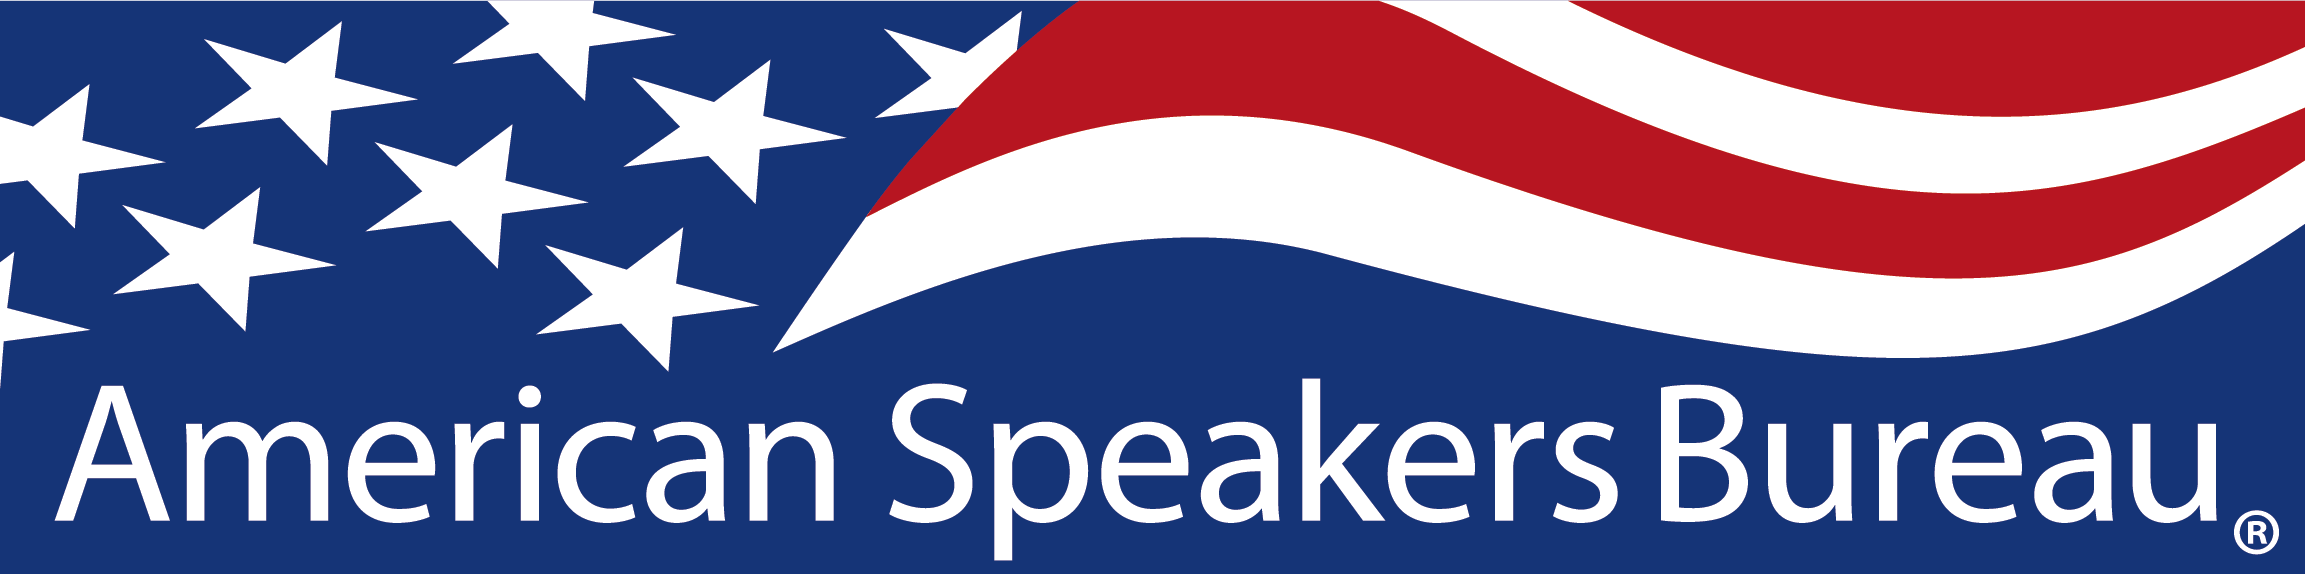 (c) Speakersbureau.com